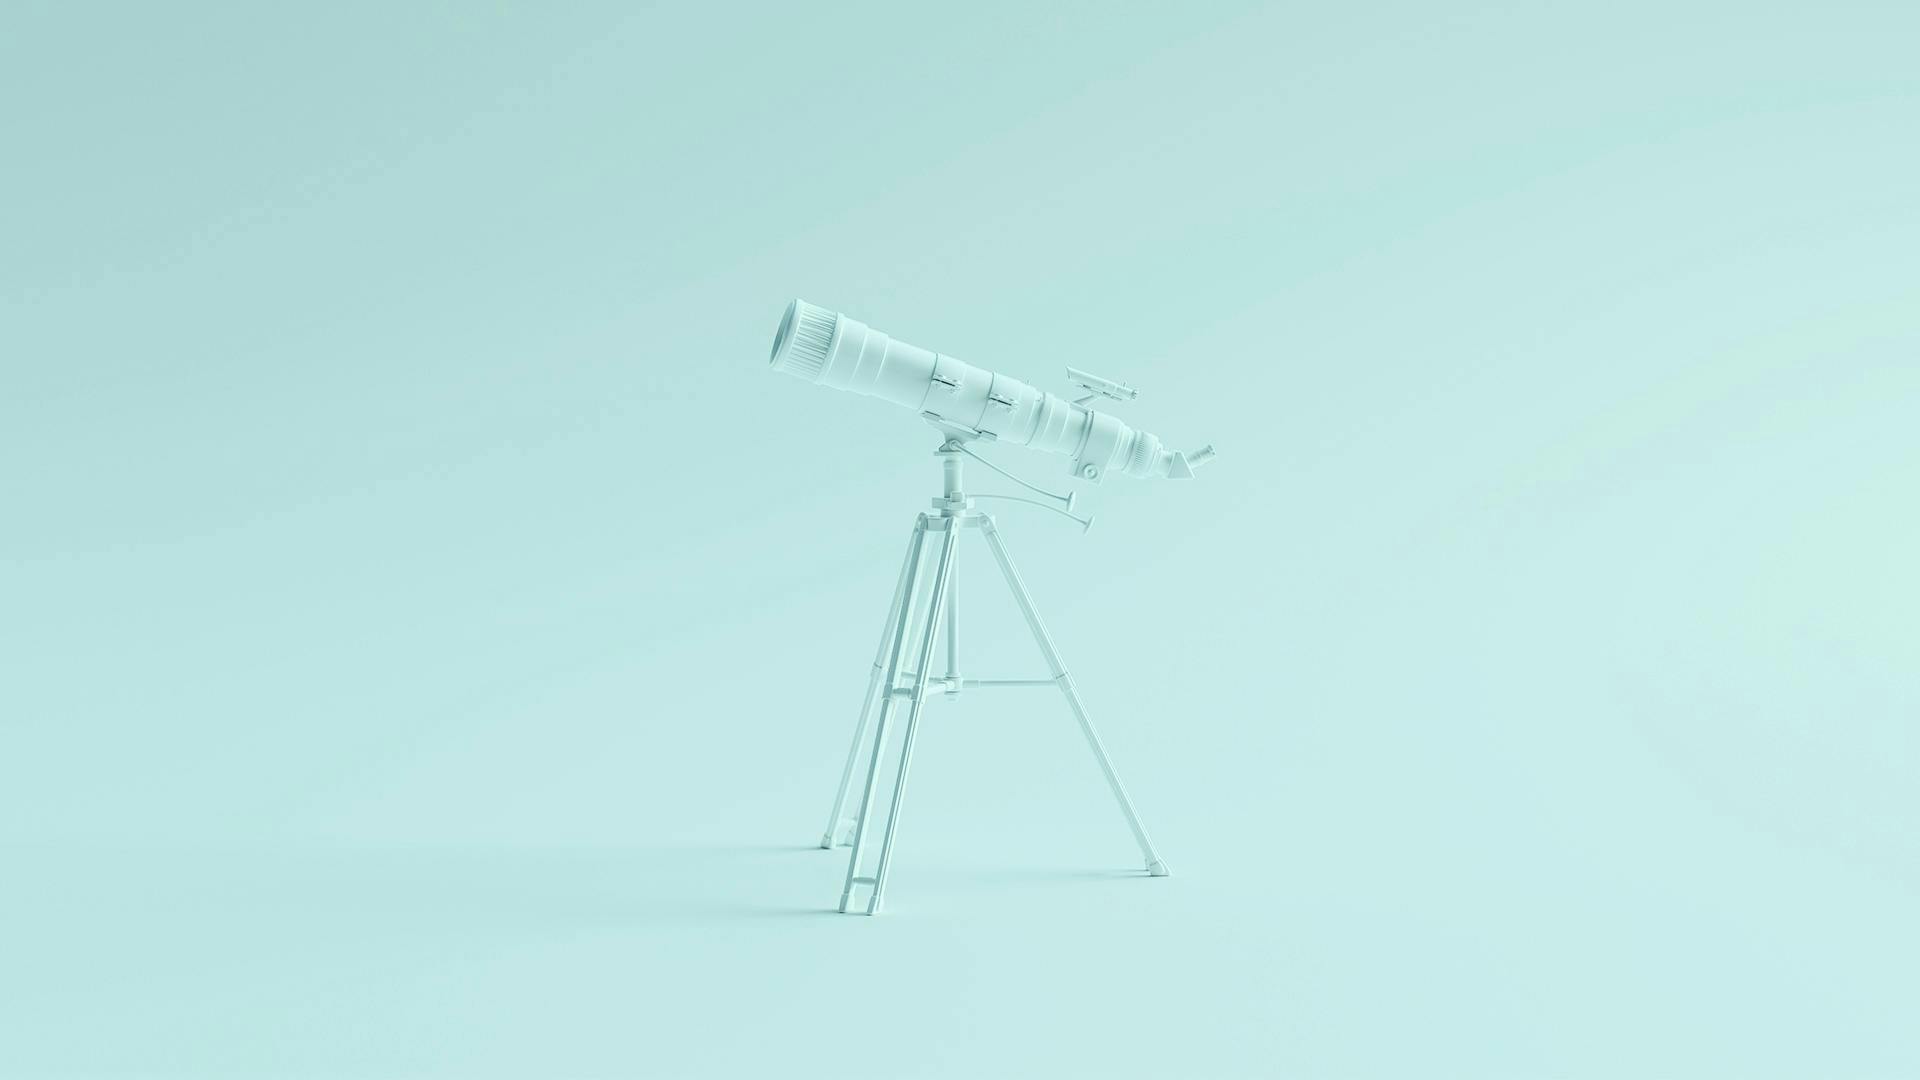 Un téléscope bleu pointant vers la gauche sur un fond bleu clair